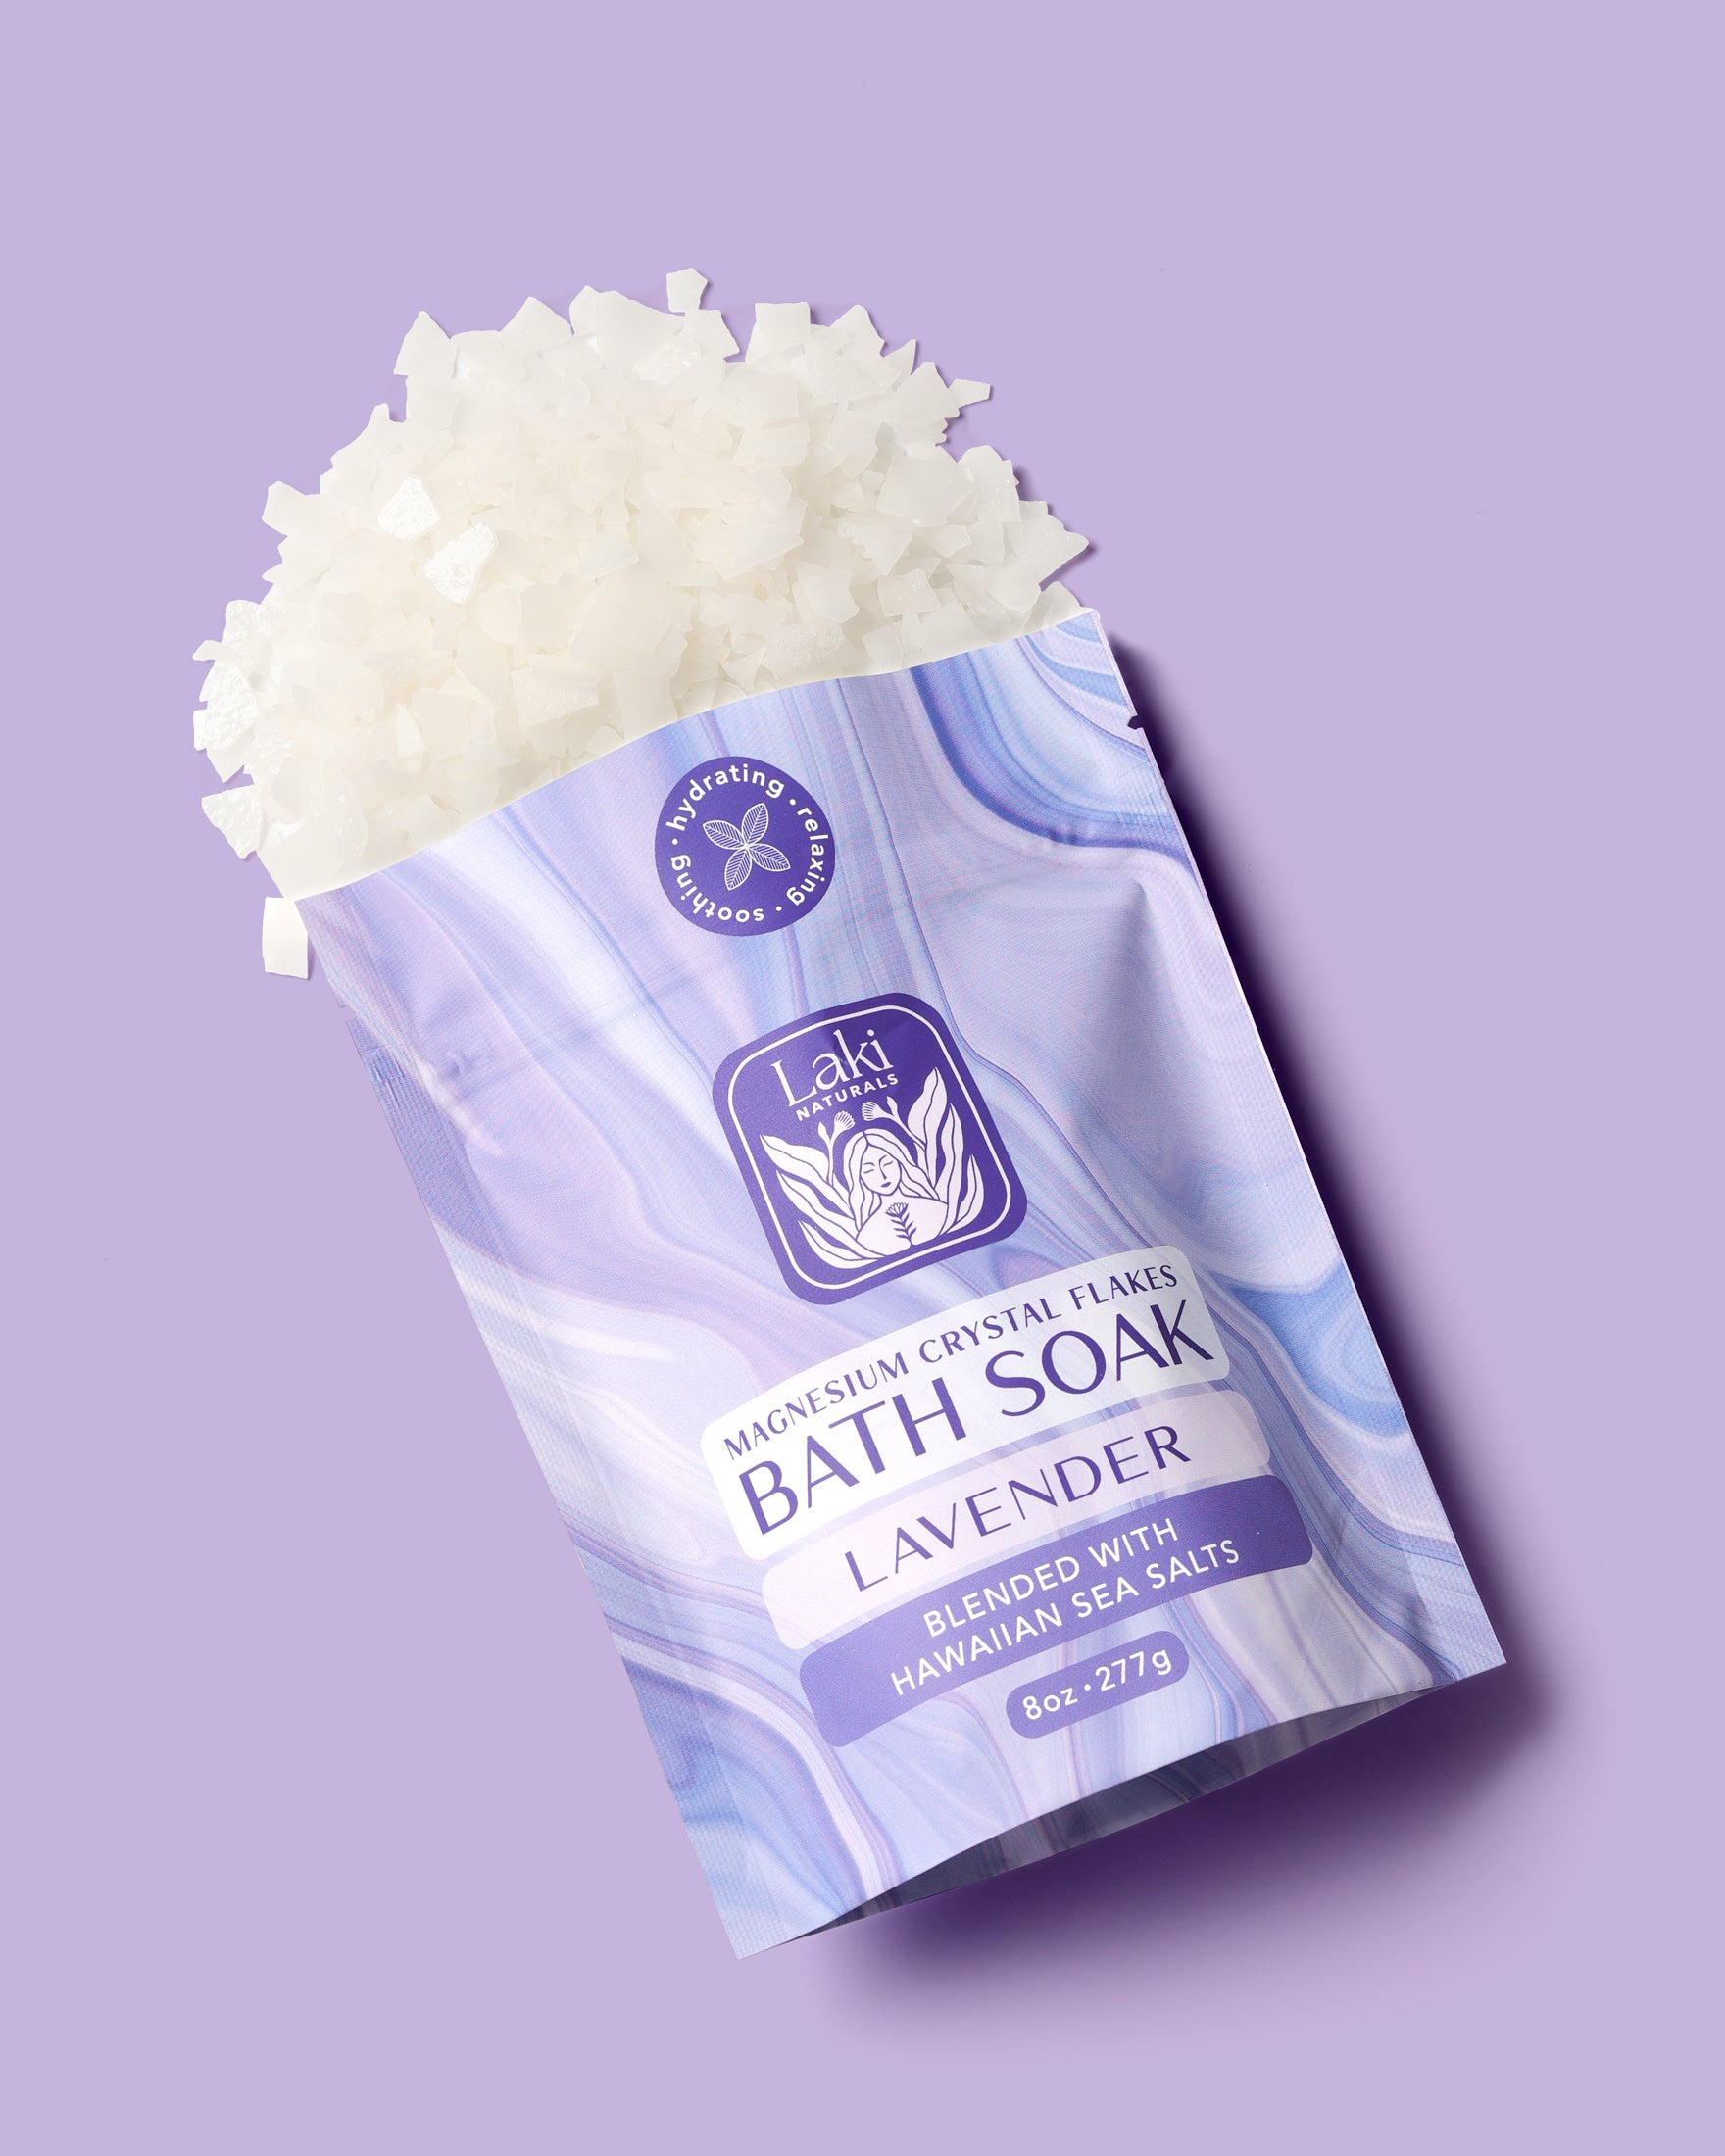 Lavender Magnesium Bath Soak - Laki Naturals